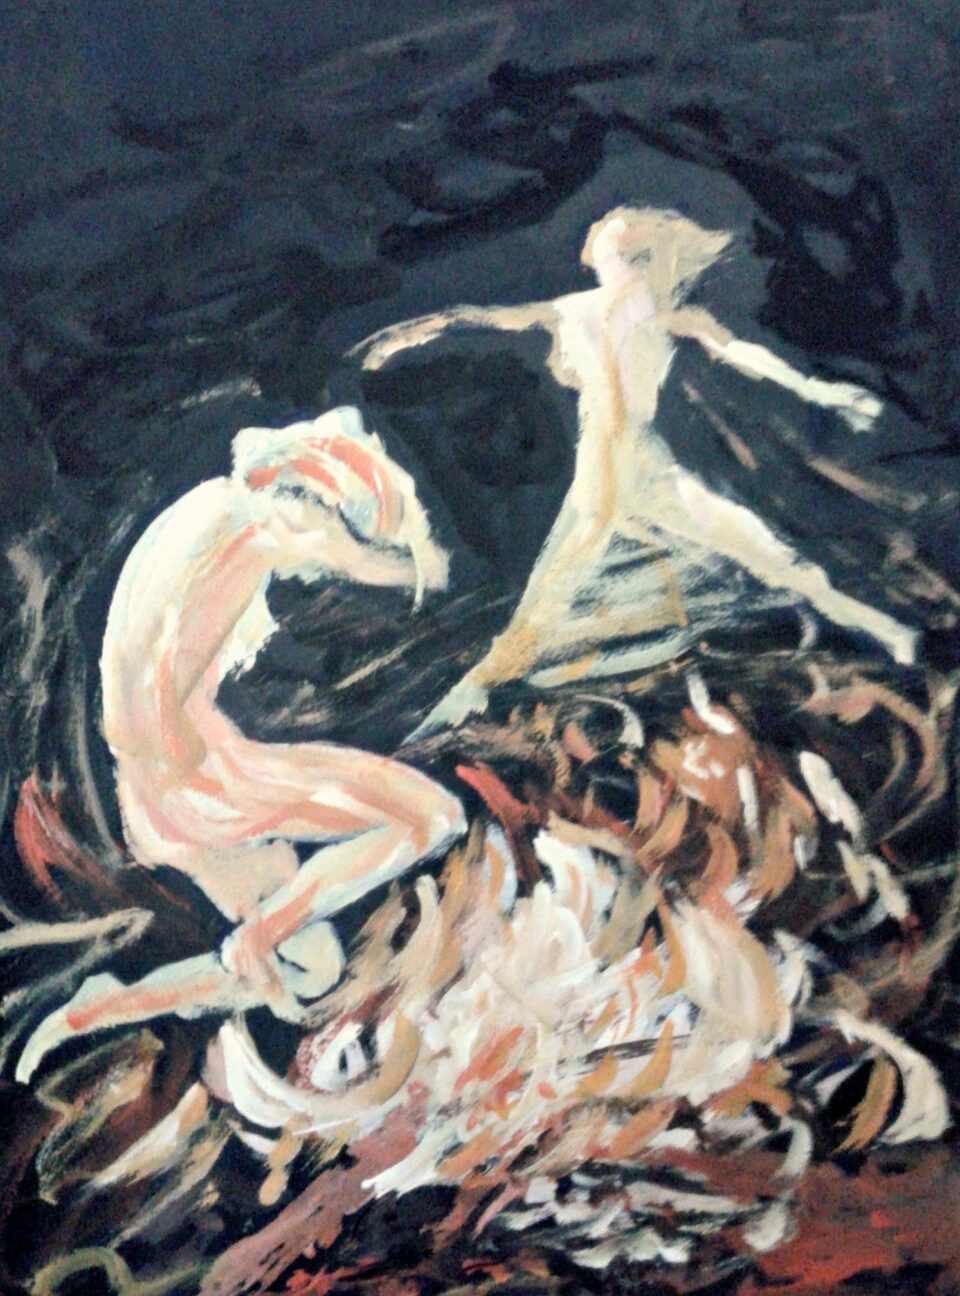 The Fire Dance, 2014